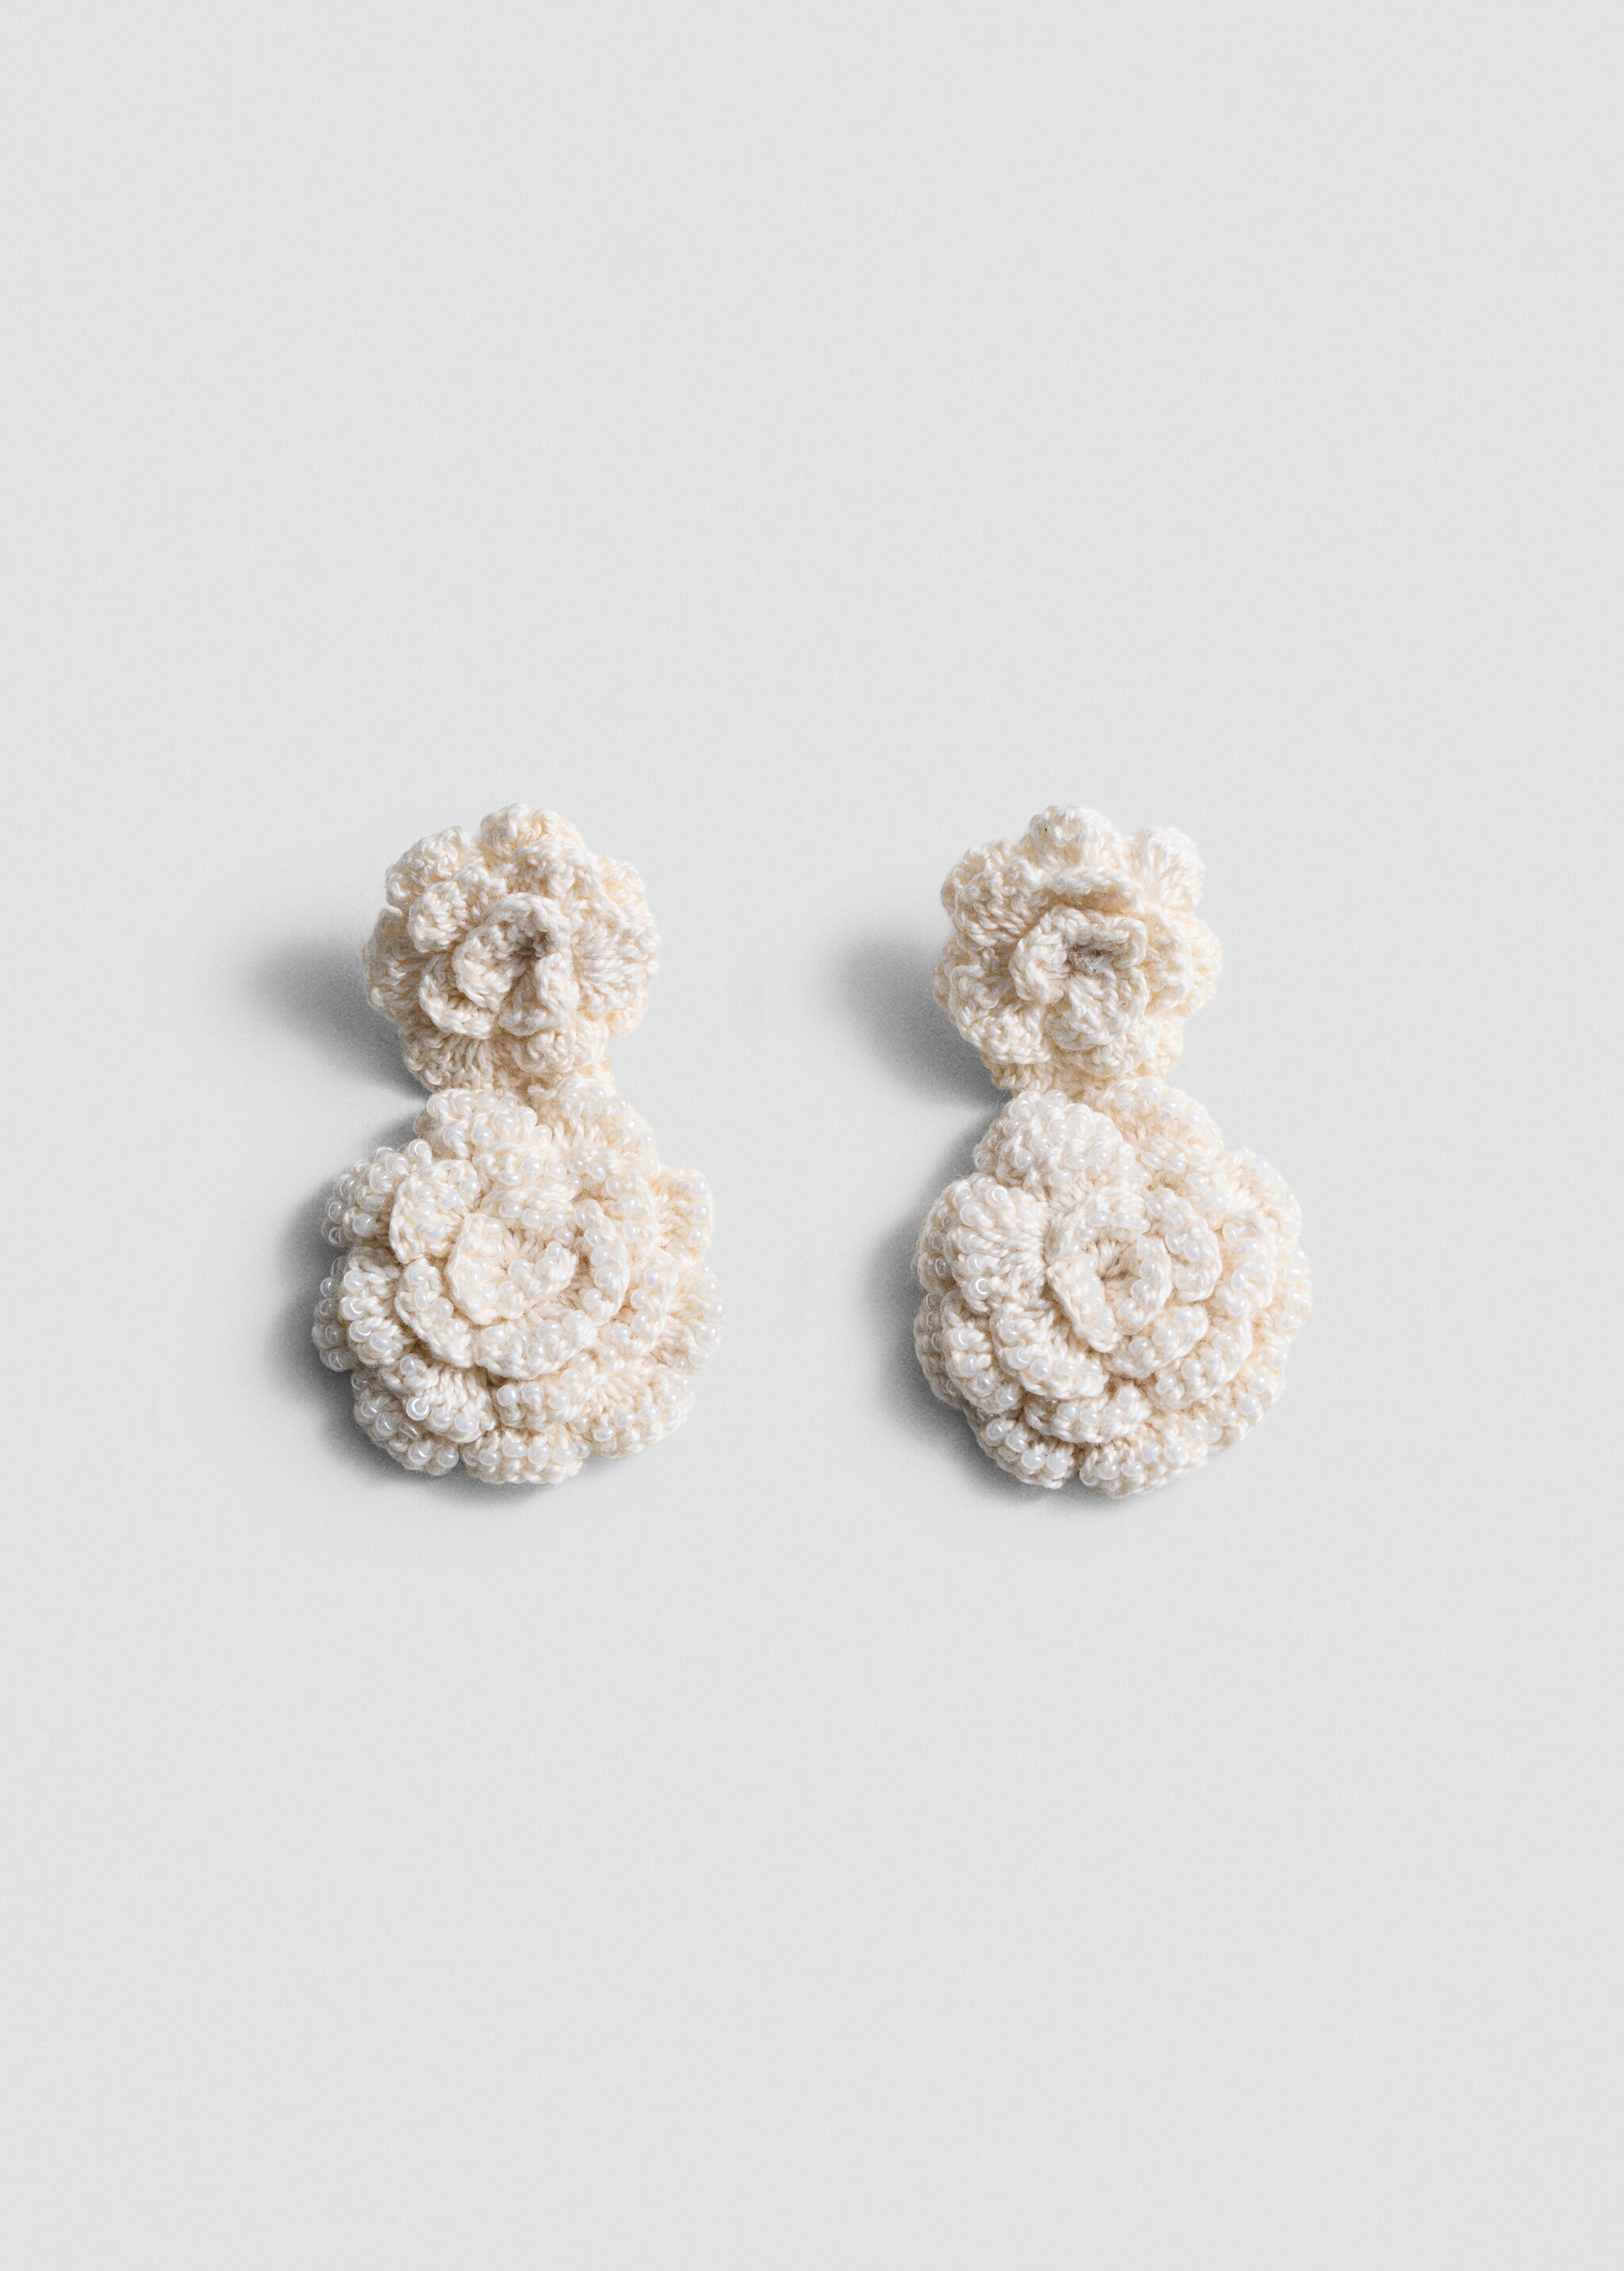 Crochet flower earrings - Article without model